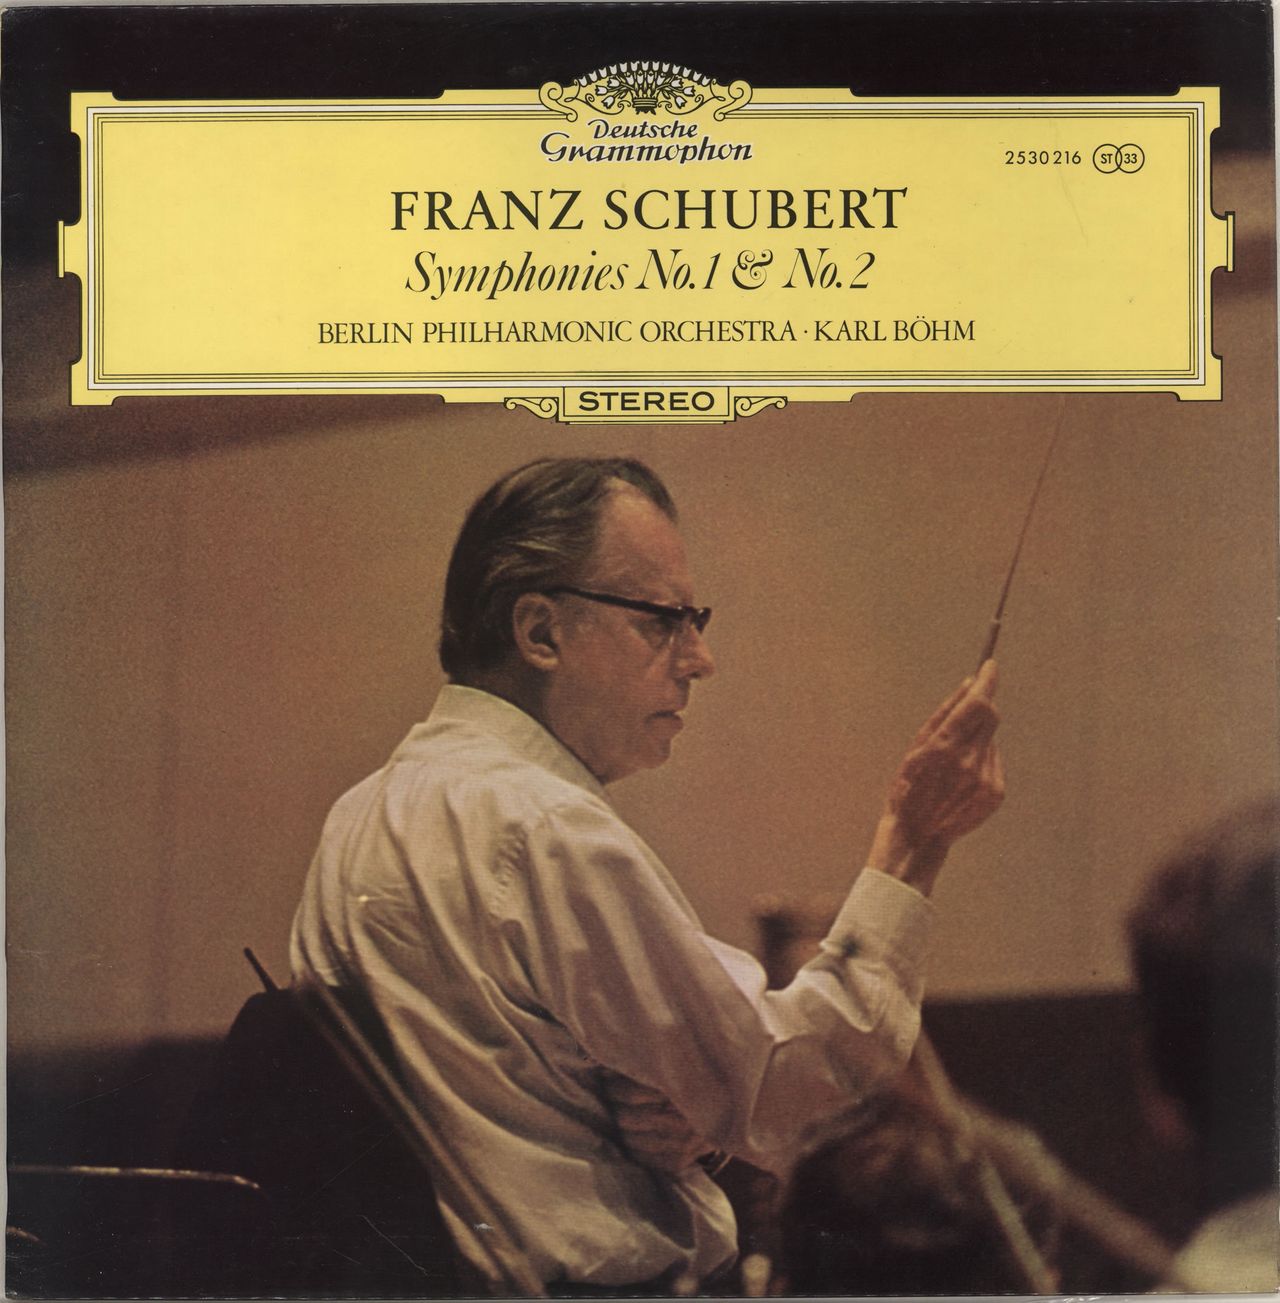 Franz Schubert Franz Schubert Symphonien Nr. 1 & Nr. 2 German vinyl LP album (LP record) 2530216